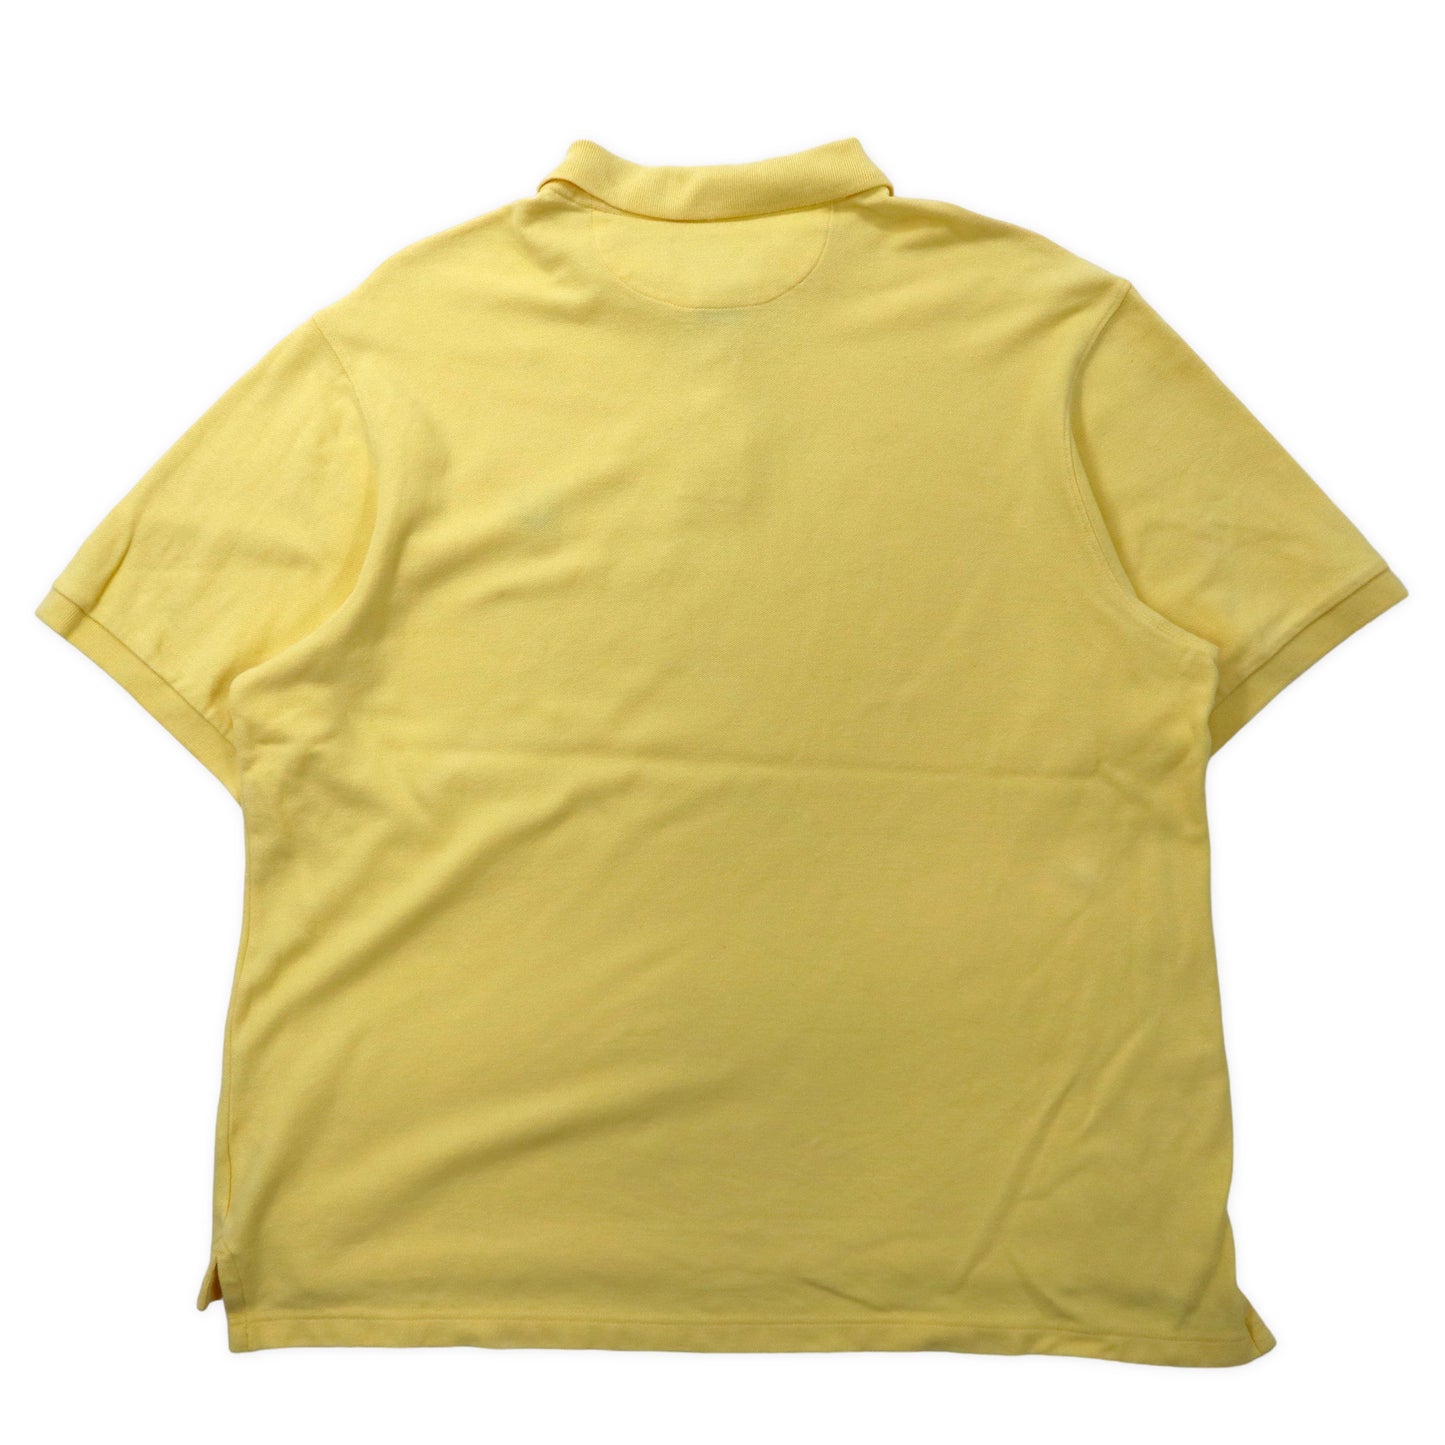 CHAPS RALPH LAUREN ポロシャツ XL イエロー コットン ワンポイントロゴ ビッグサイズ